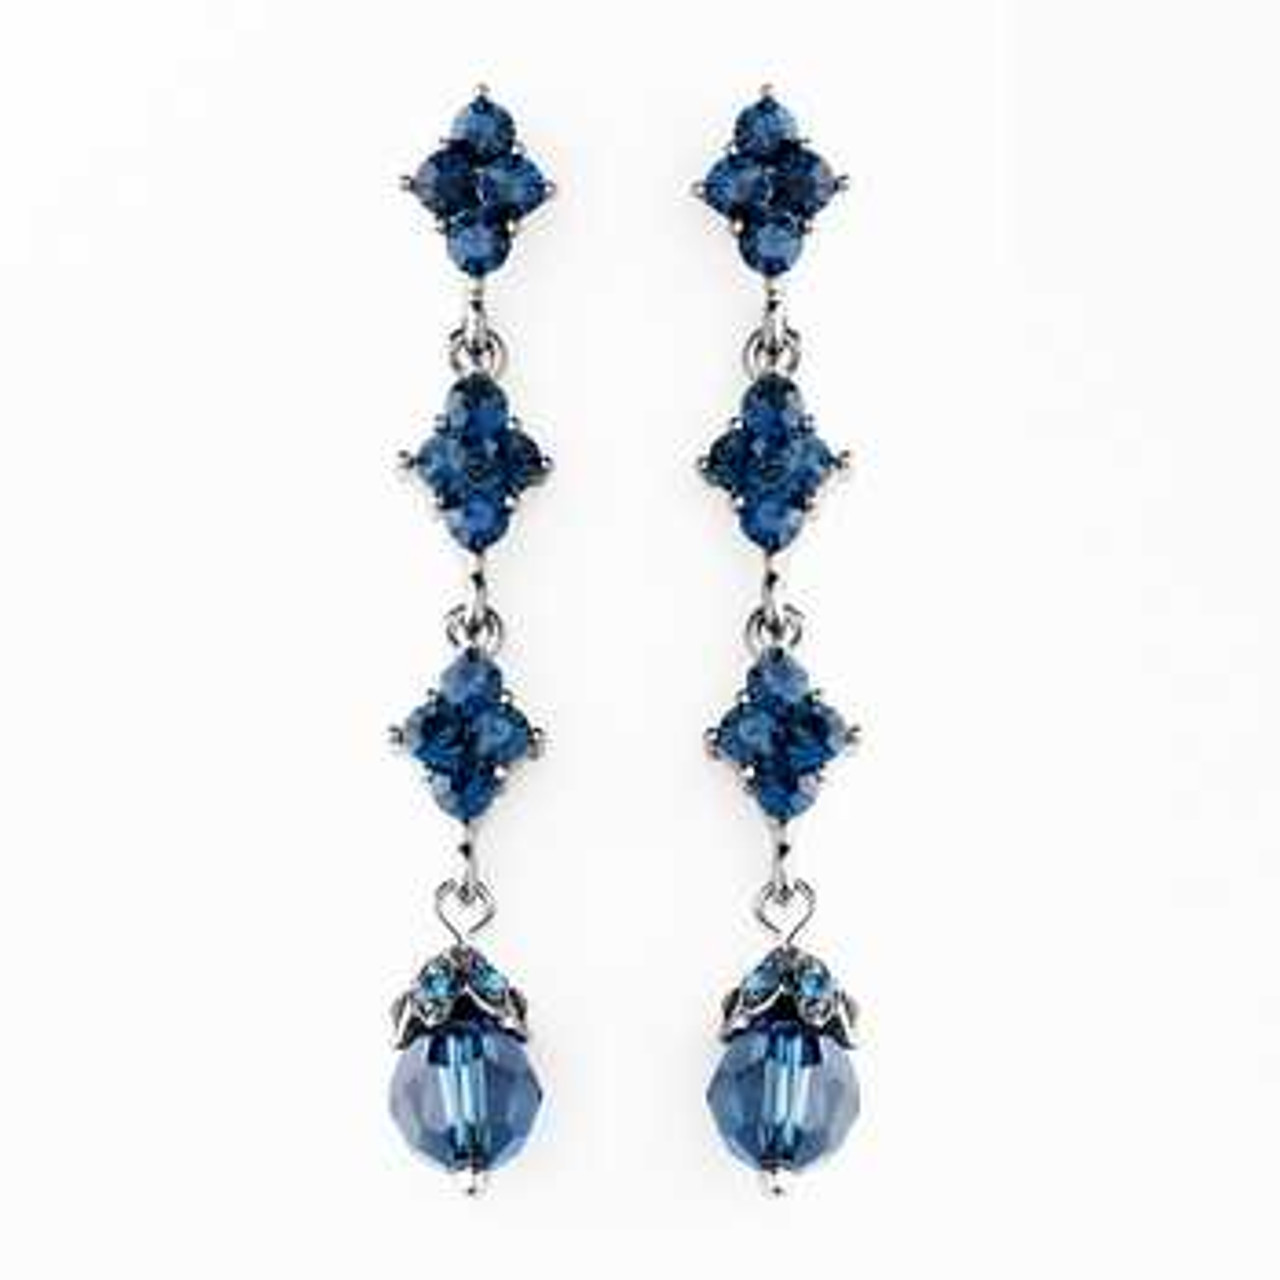 Crystal earrings Oscar De La Renta Blue in Crystal - 39860884